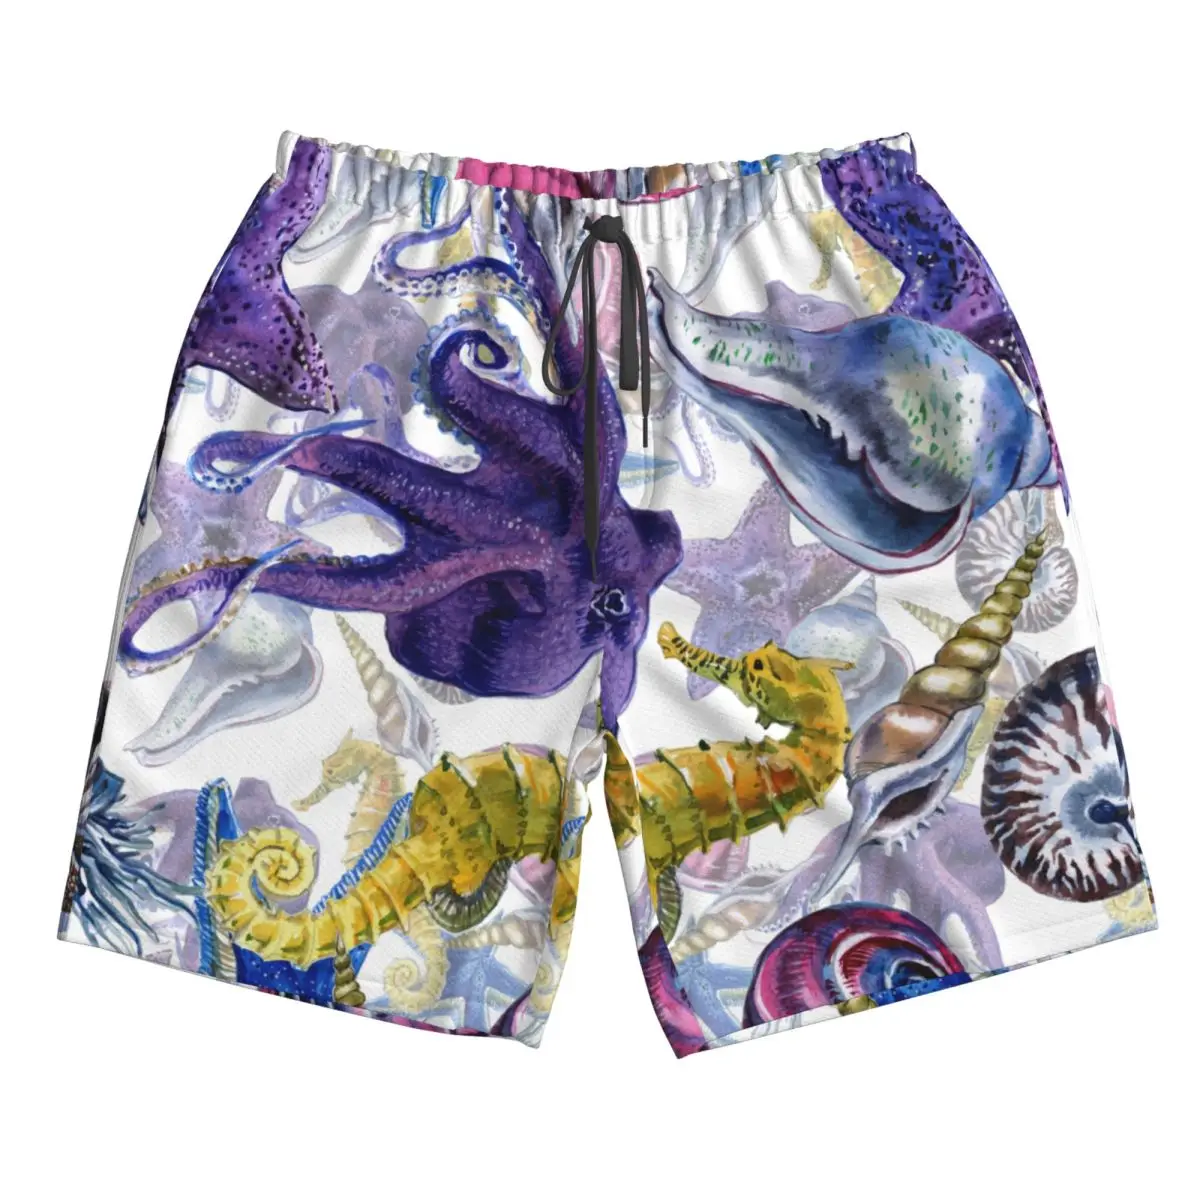 גברים חוף קצר מהיר ייבוש שחייה המטען בצבעי מים חוף צדפים יצורים תת בגדי ים בגדי ים בגד ים קצר - 4